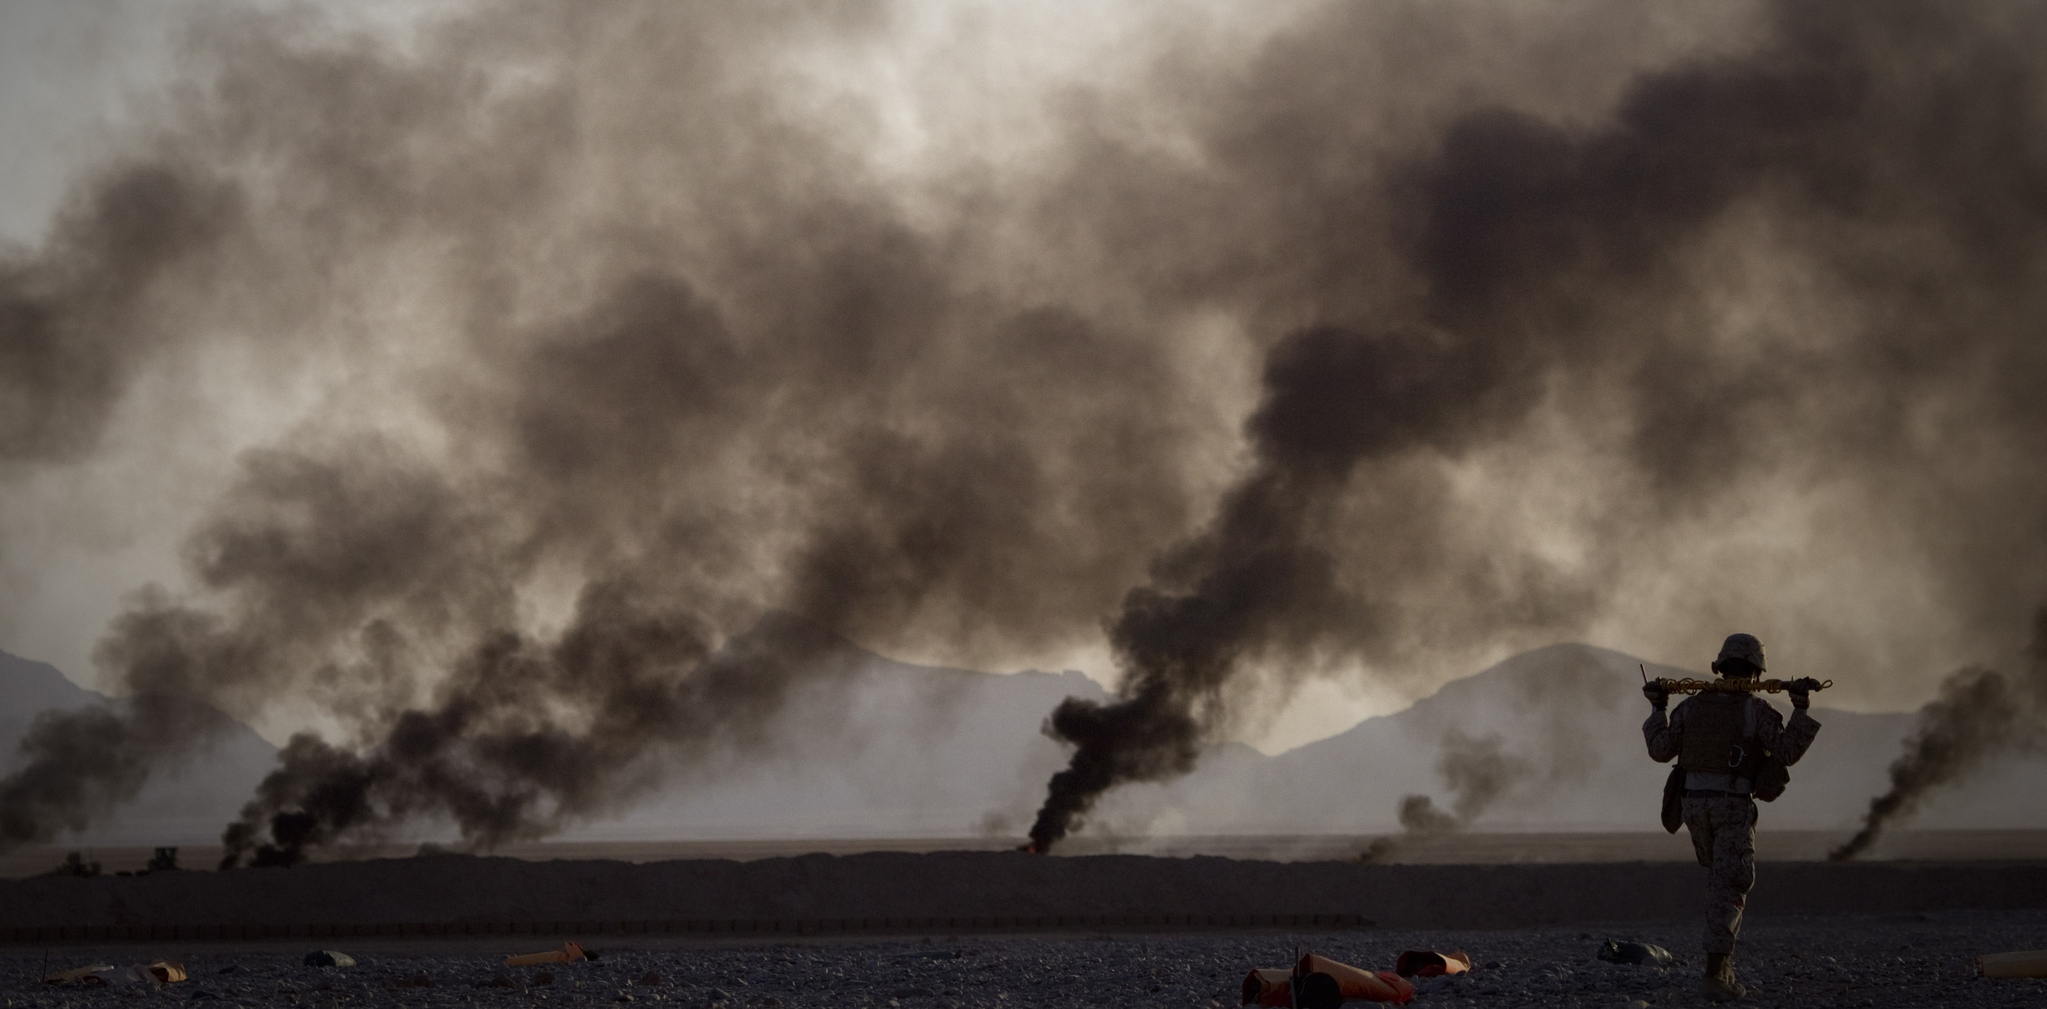 사진으로 보는 아프간 전쟁 20년, 오는 9월 미군 완전 철수